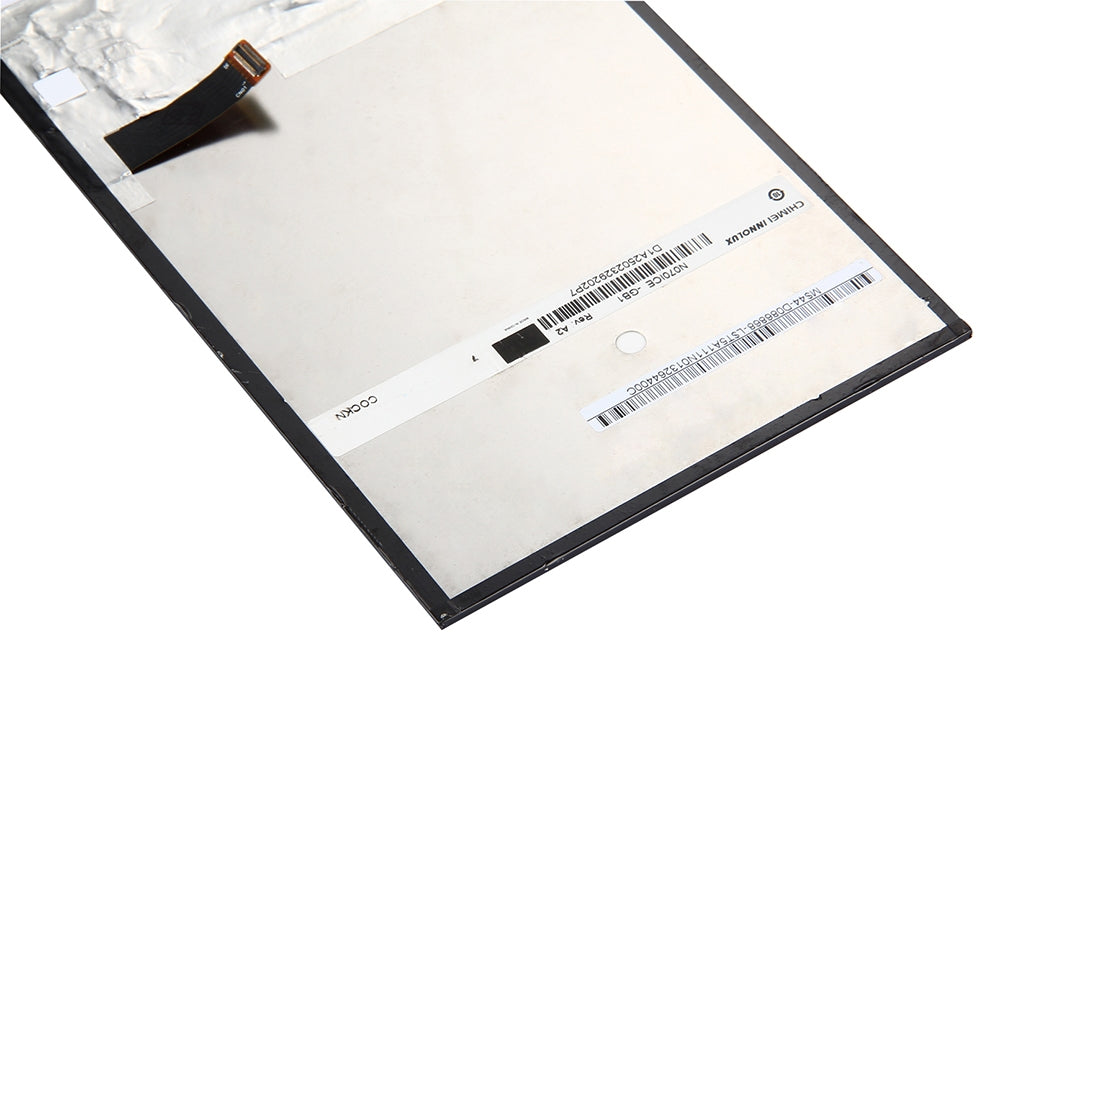 Pantalla LCD Display Interno Asus FonePad ME371 K004